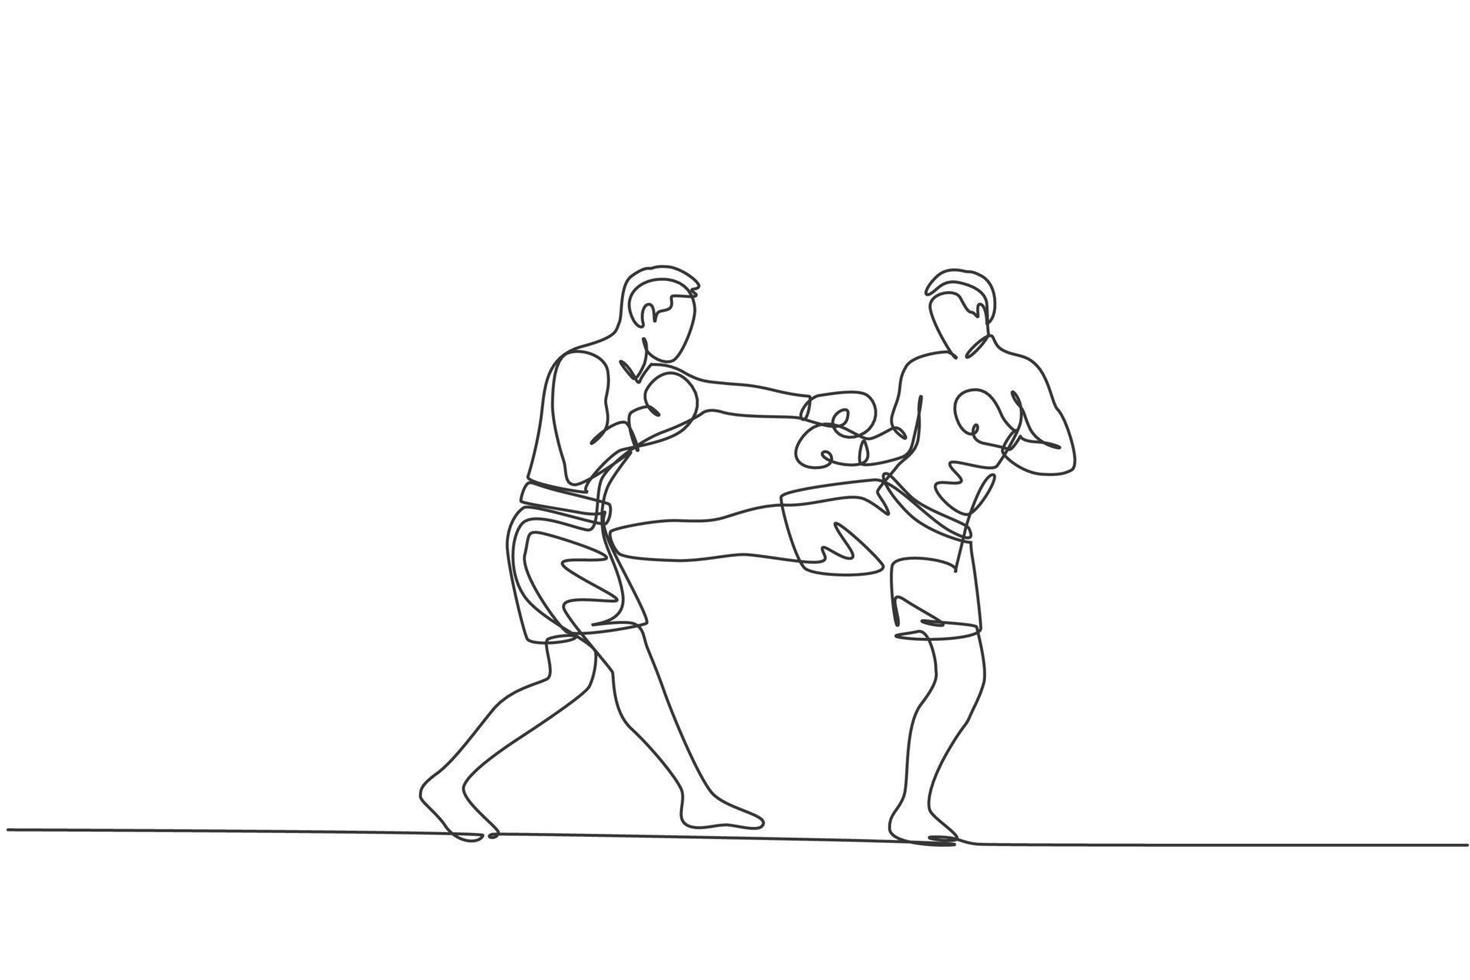 un dibujo de una sola línea de un joven y enérgico kickboxer peleando en un torneo local en el gráfico de ilustración vectorial de la arena de boxeo. concepto de deporte de estilo de vida saludable. diseño moderno de dibujo de línea continua vector